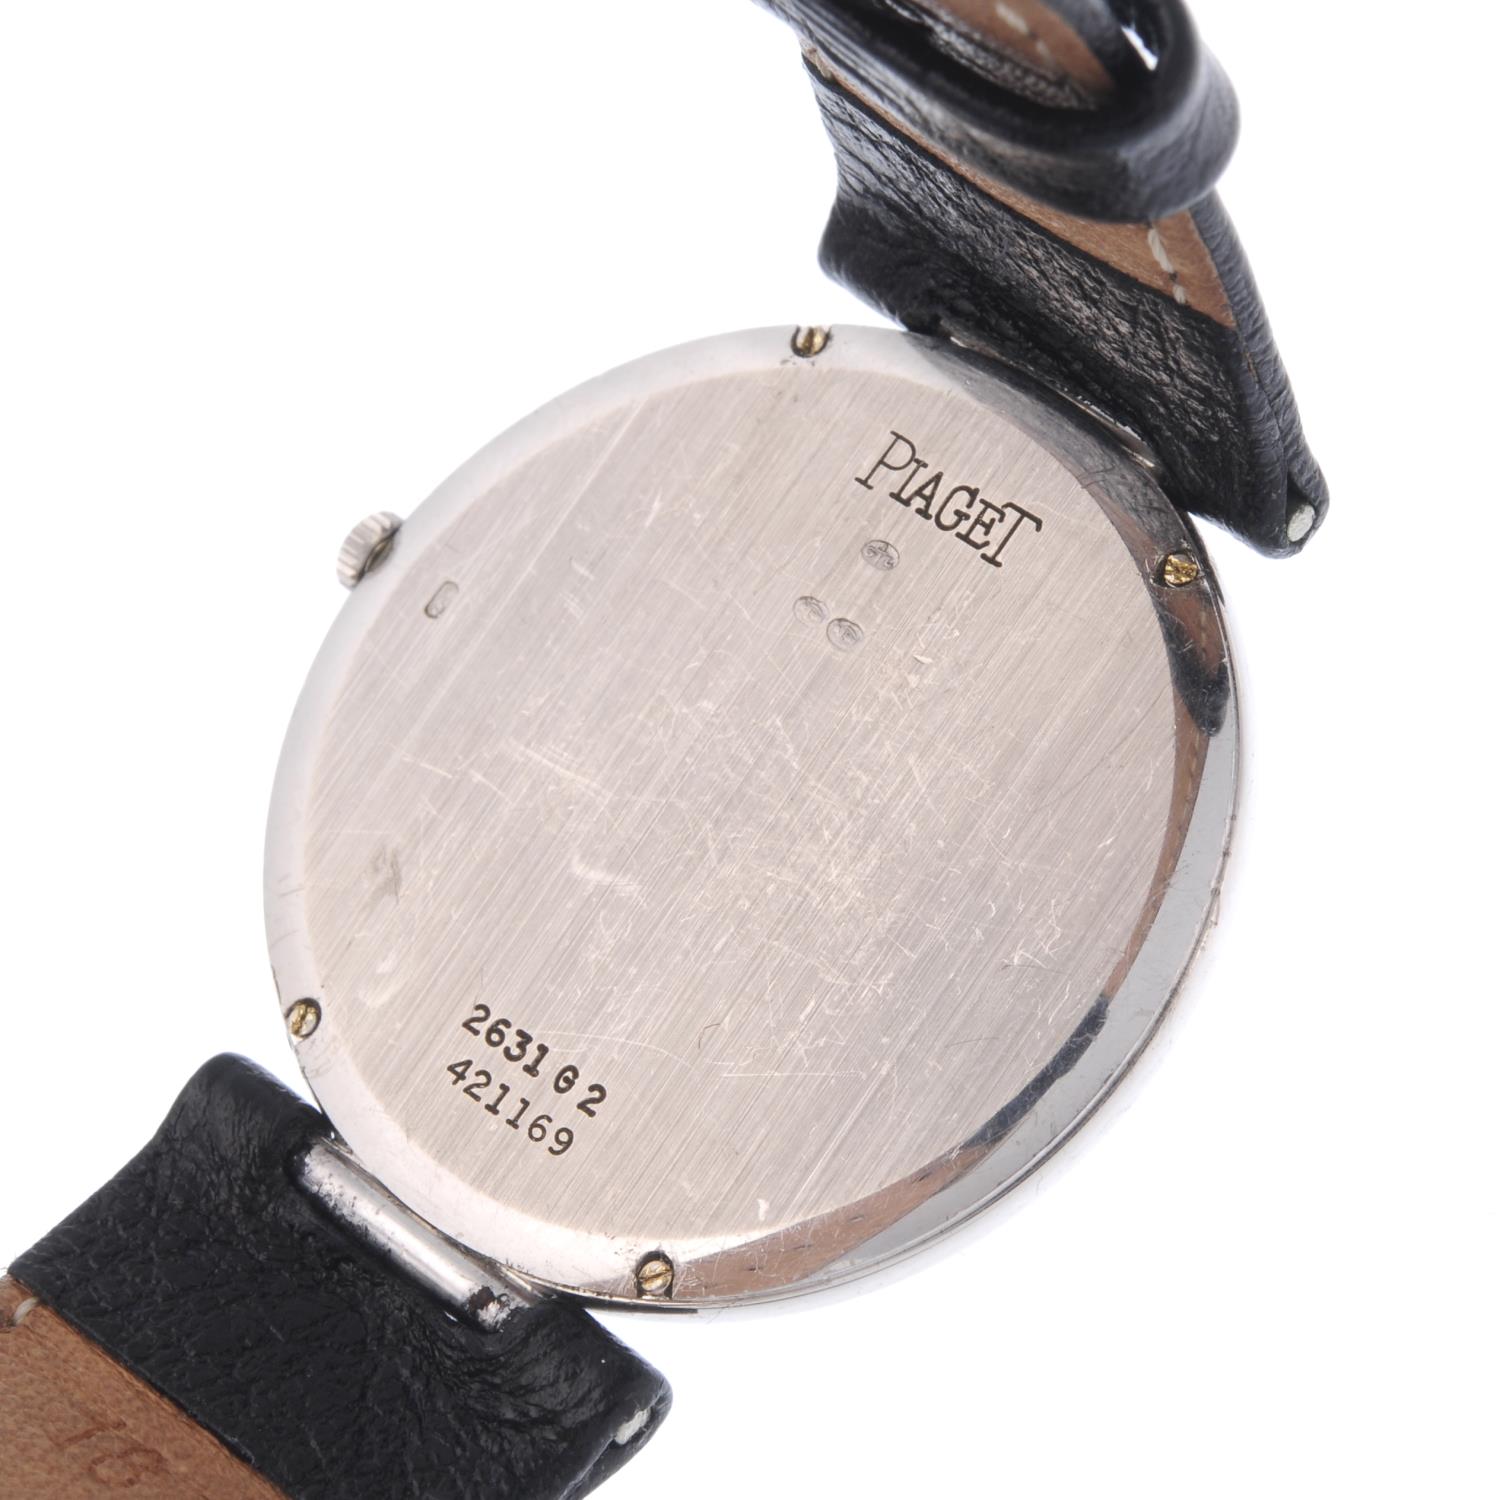 PIAGET - a gentleman's Dress wrist watch. - Image 2 of 3